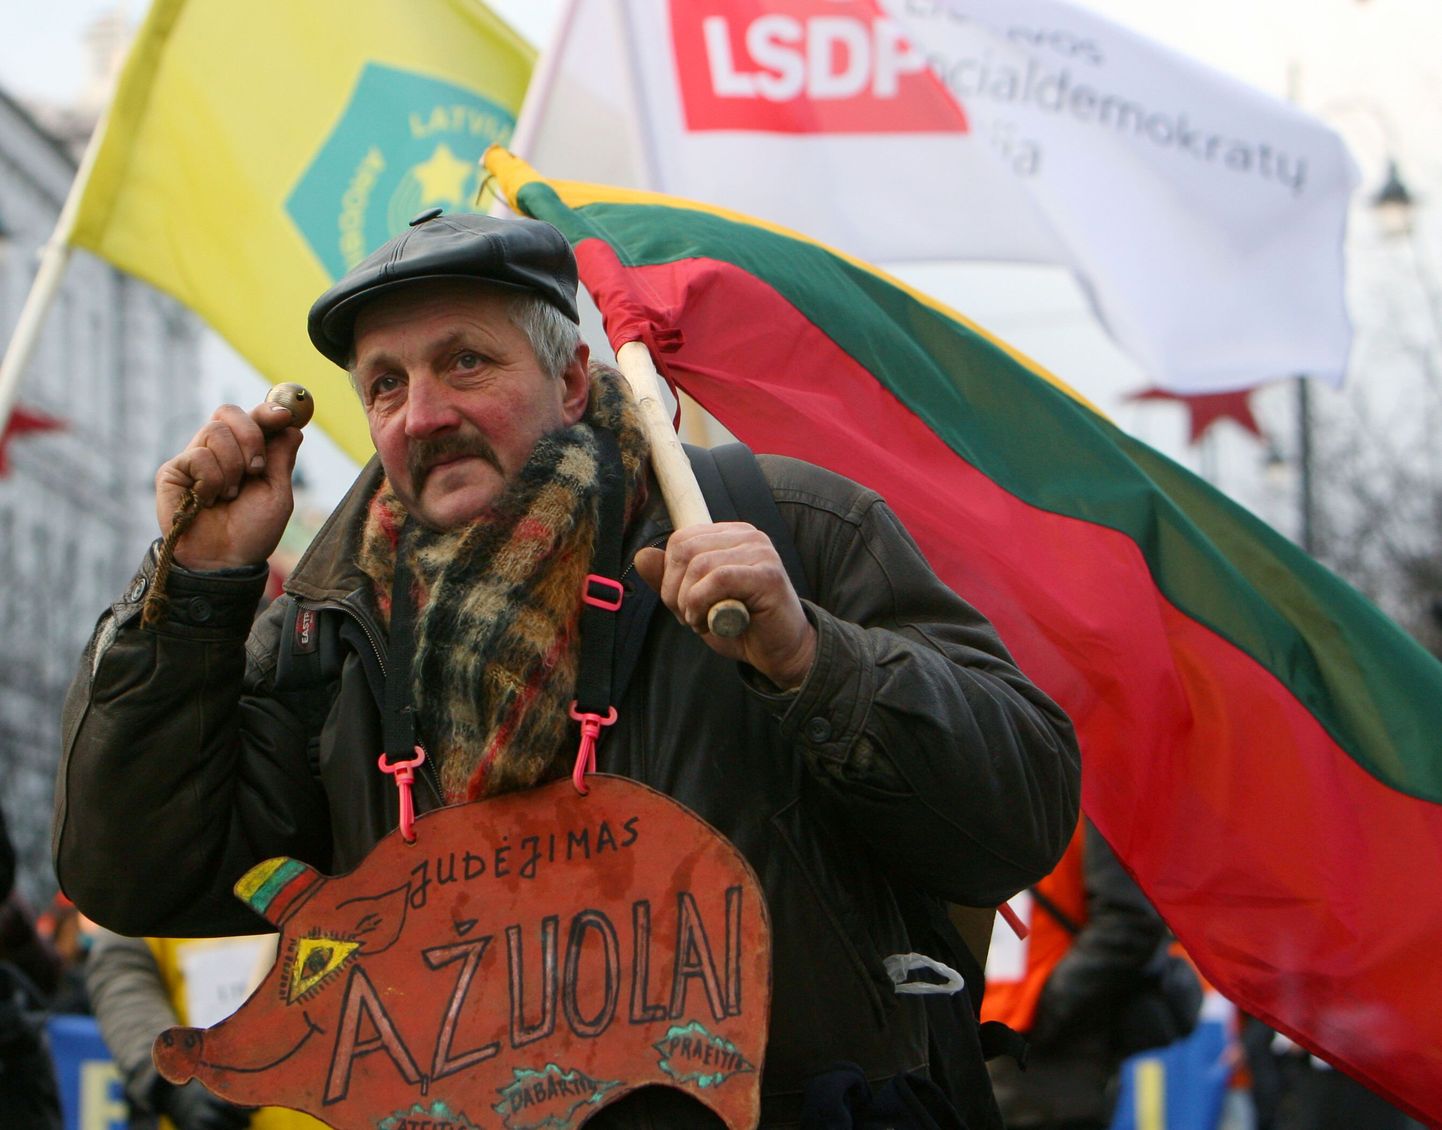 Leedulane pensionäride ja ametiühingute meeleavaldusel.